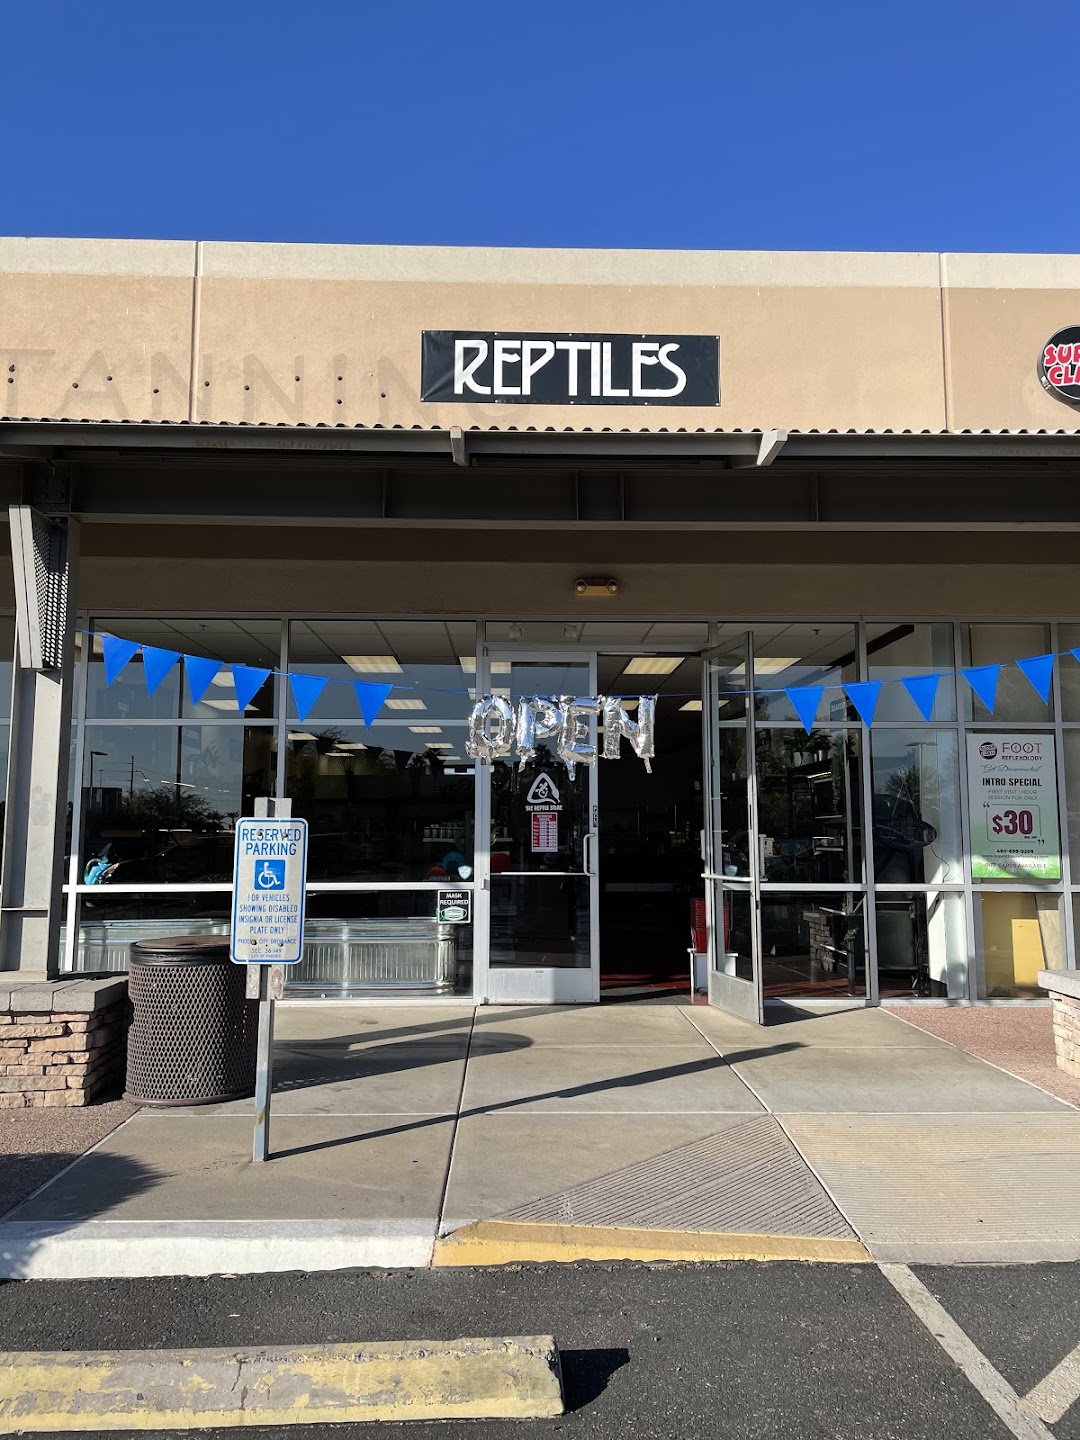 The Reptile Store